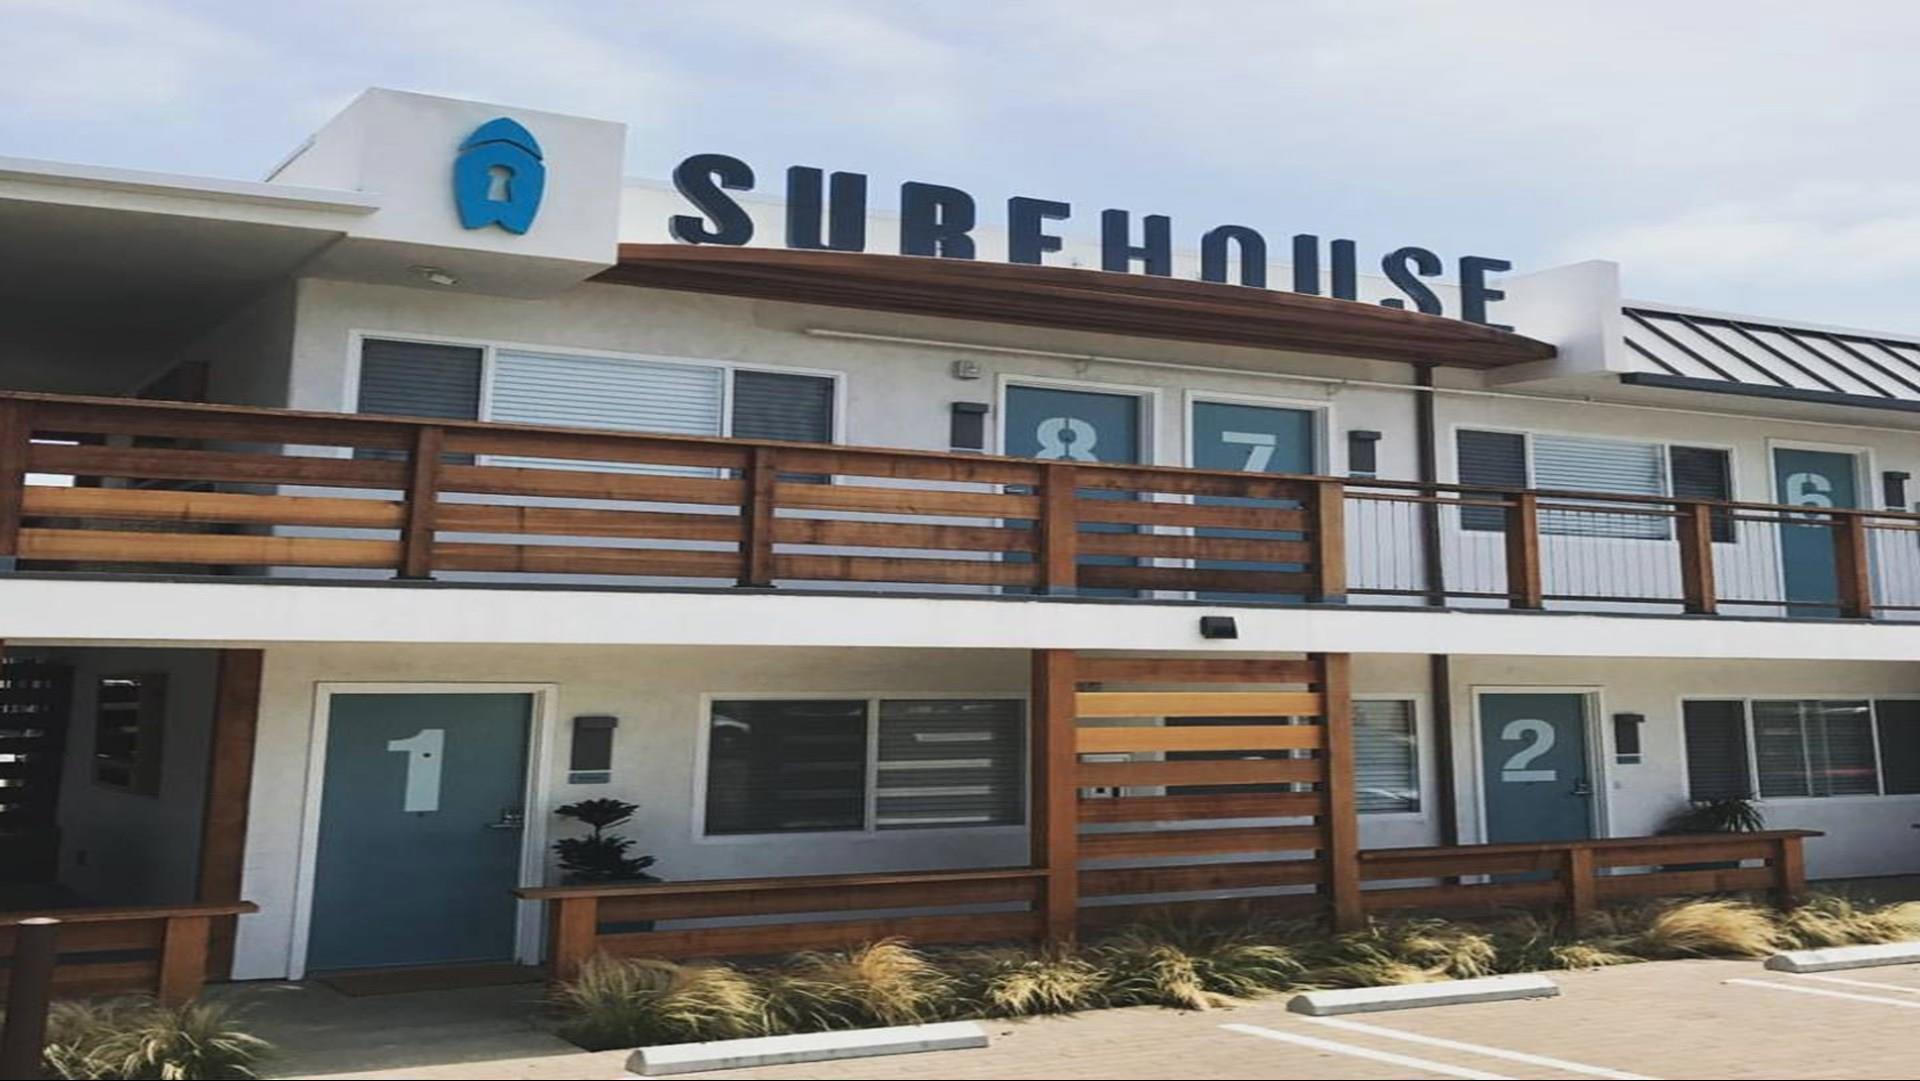 Surfhouse Boutique Motel in Encinitas, CA